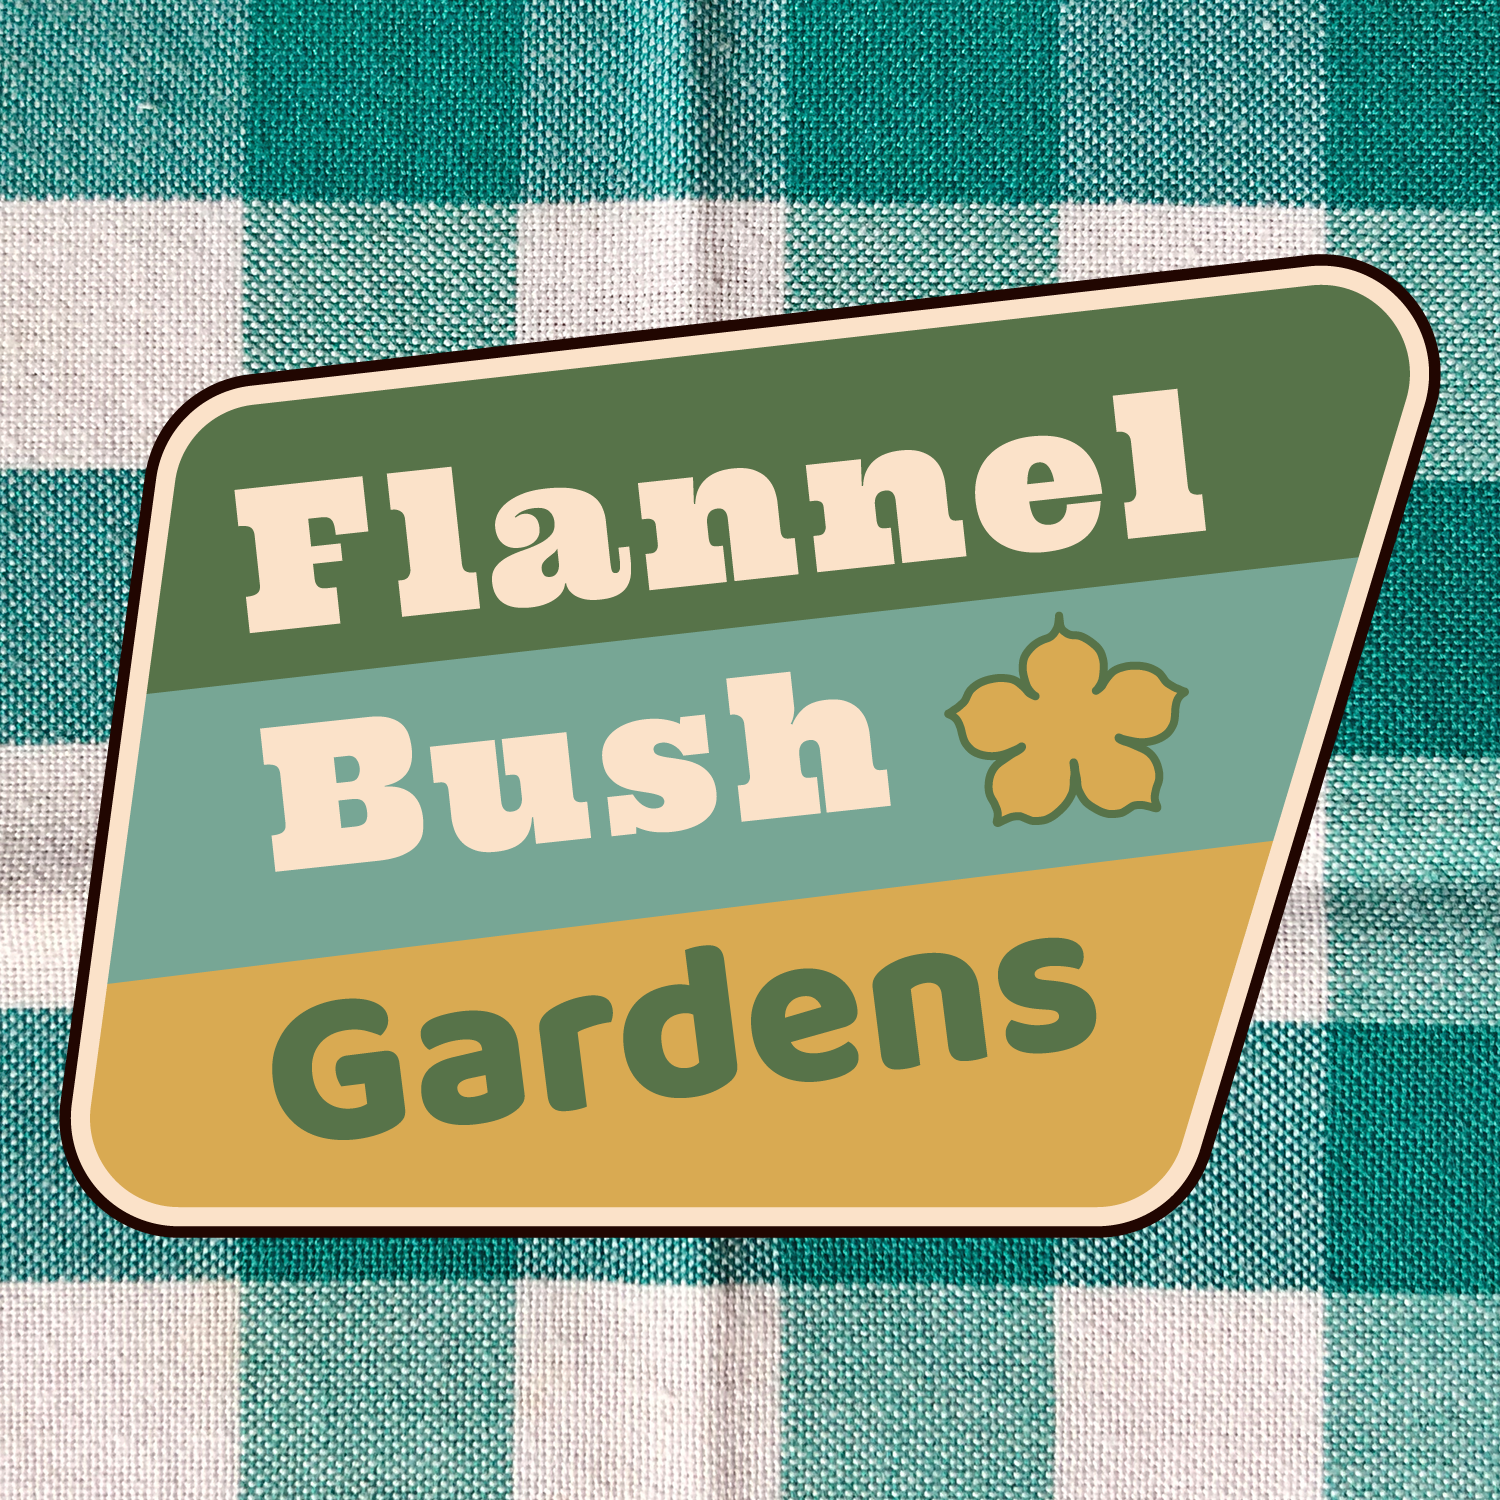 Flannel Bush Gardens-Unlicensed Contractor Logo